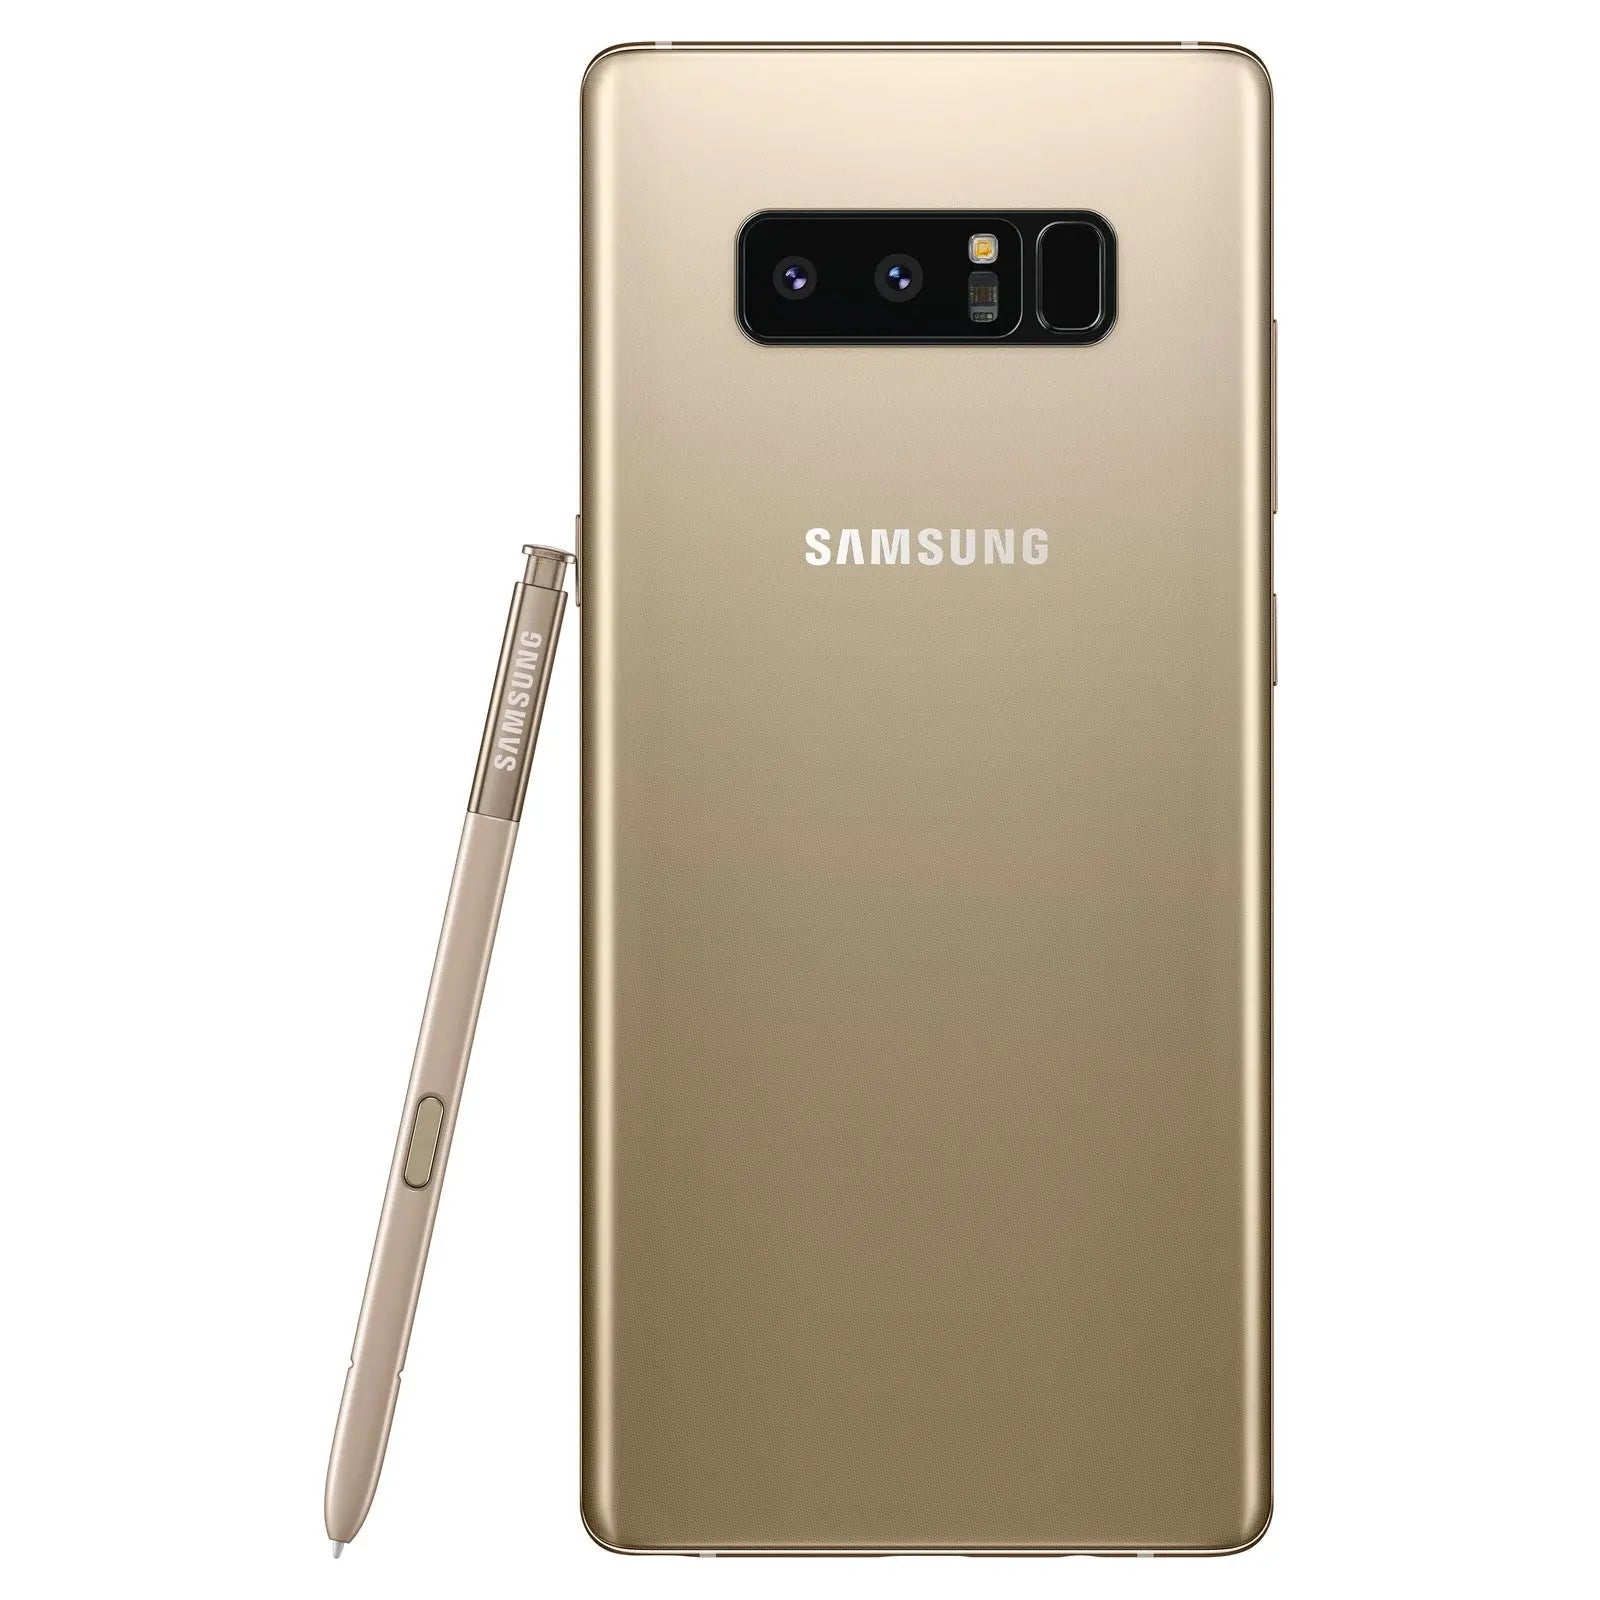 Smartphone Samsung Galaxy Note 8 ( OR ) - 64 Go N950FZDAXEF 8806088949673 Samsung